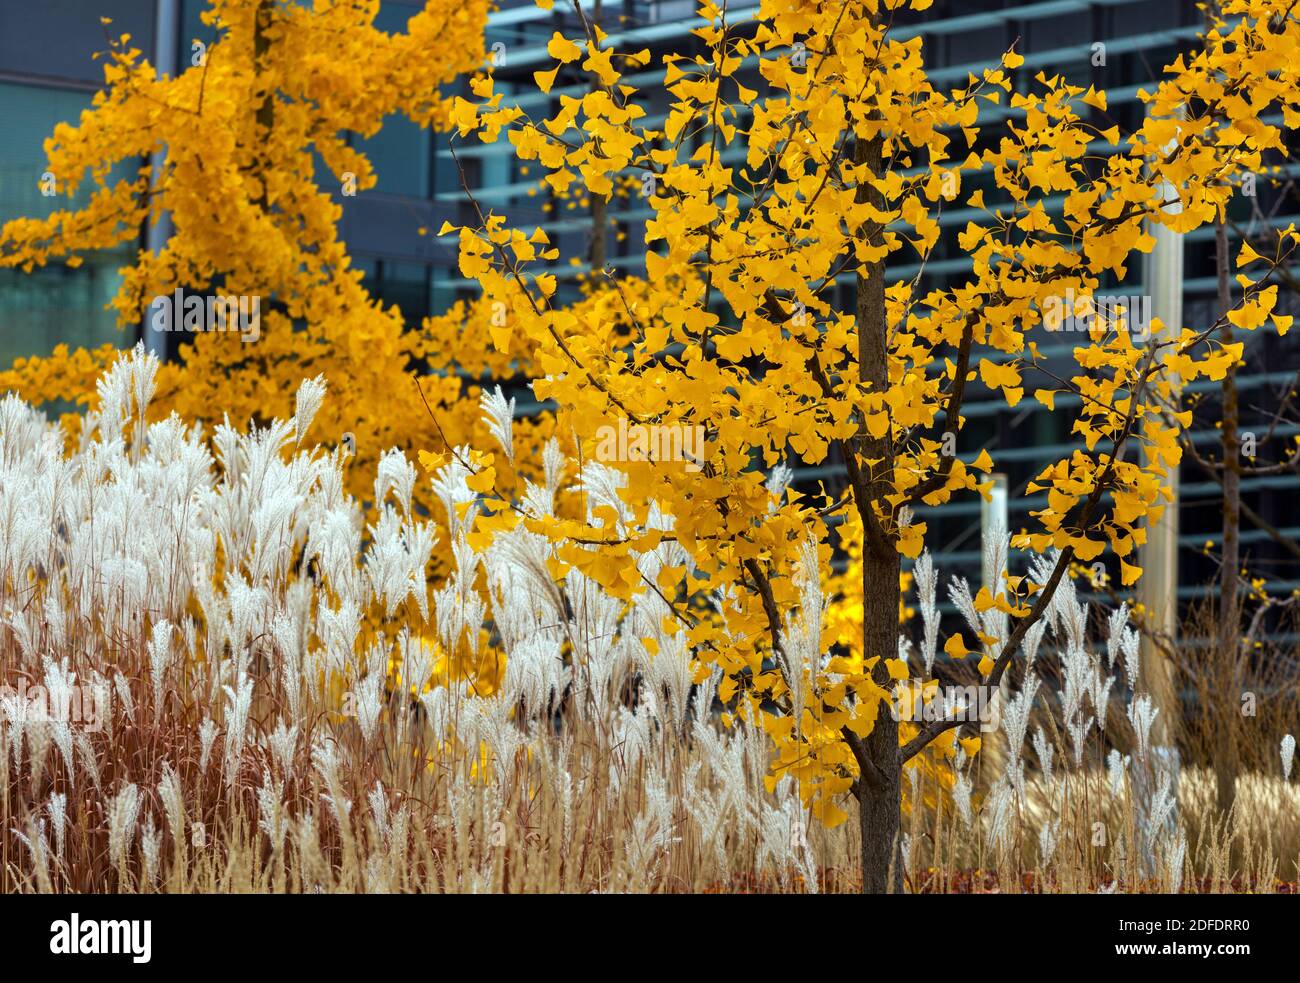 Miscanthus gelb Ginkgo biloba im Herbstgras zu modernen urbanen Szenen, farbenfroher Kontrast Stockfoto